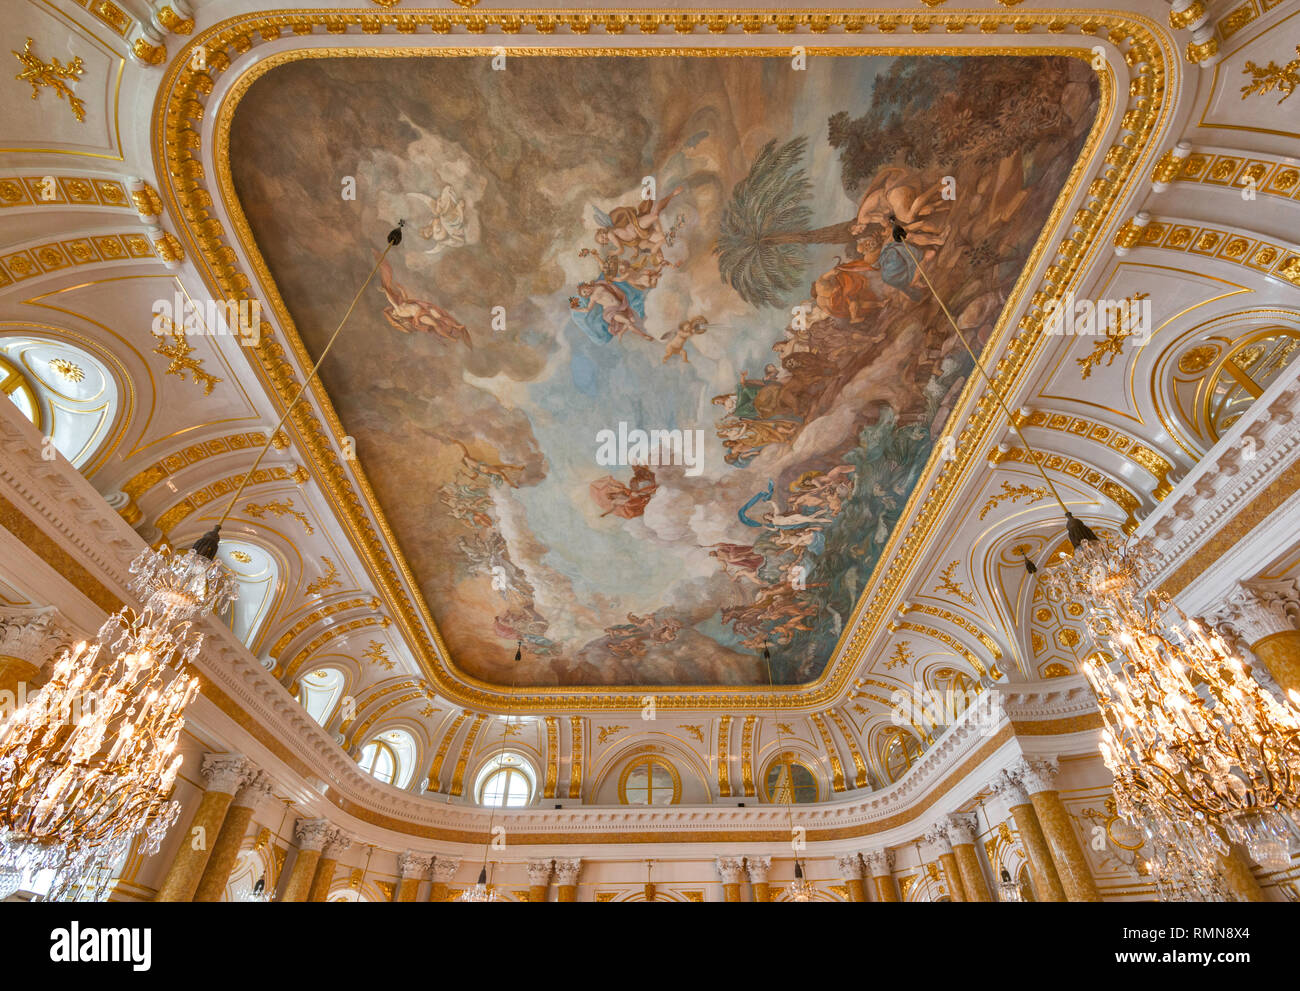 Die Entwirrung des Chaos deckenleucht Gemälde an der Decke des großen Montagehalle im königlichen Schloss in Warschau, Polen Stockfoto